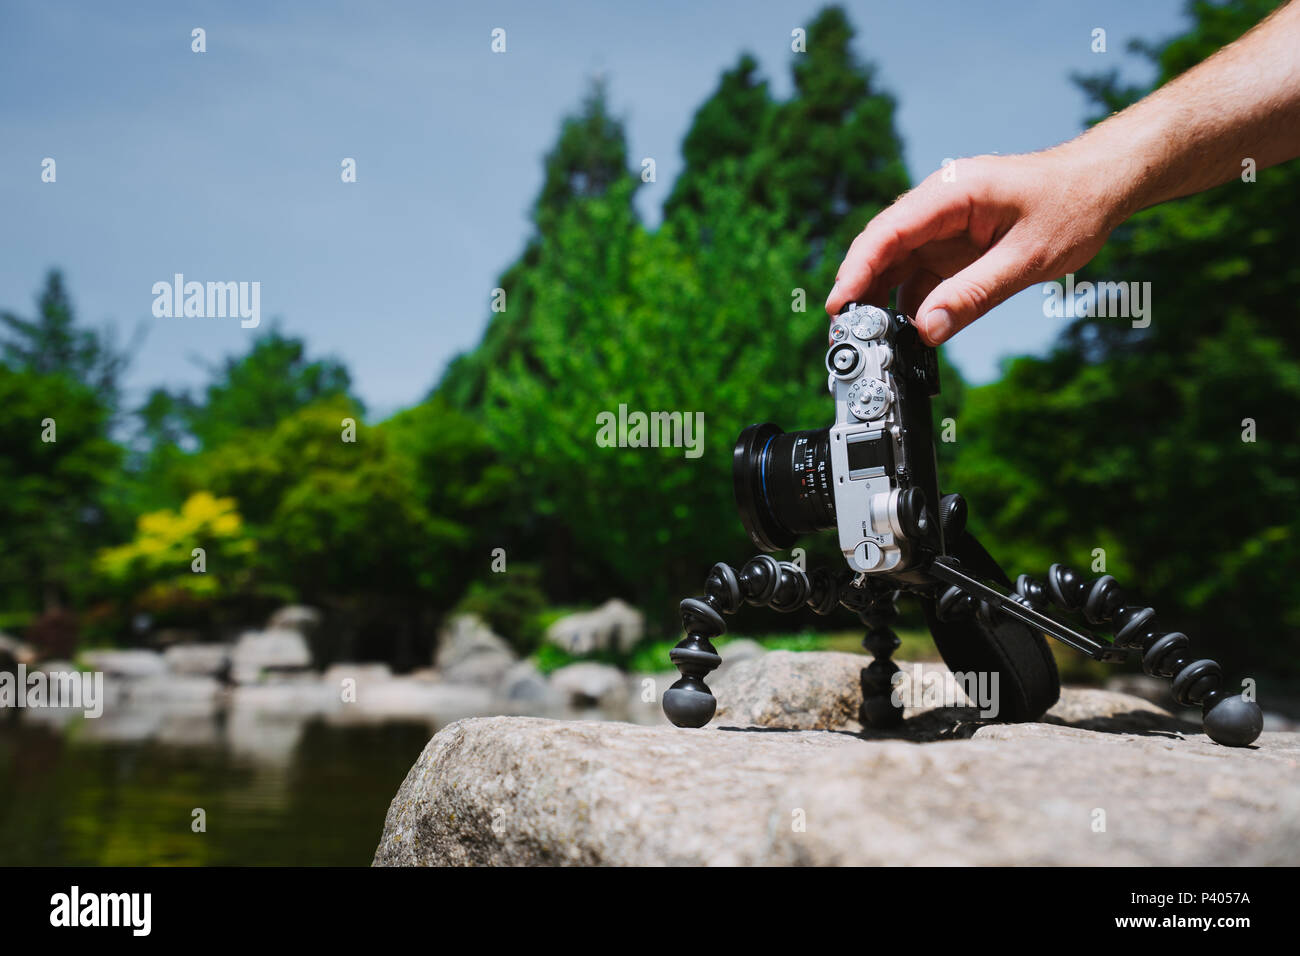 Homme Photo manipulation à la main un vieux millésime caméra sur trépied en face de l'eau étang parc Planten un Blomen à Hambourg, Allemagne Banque D'Images